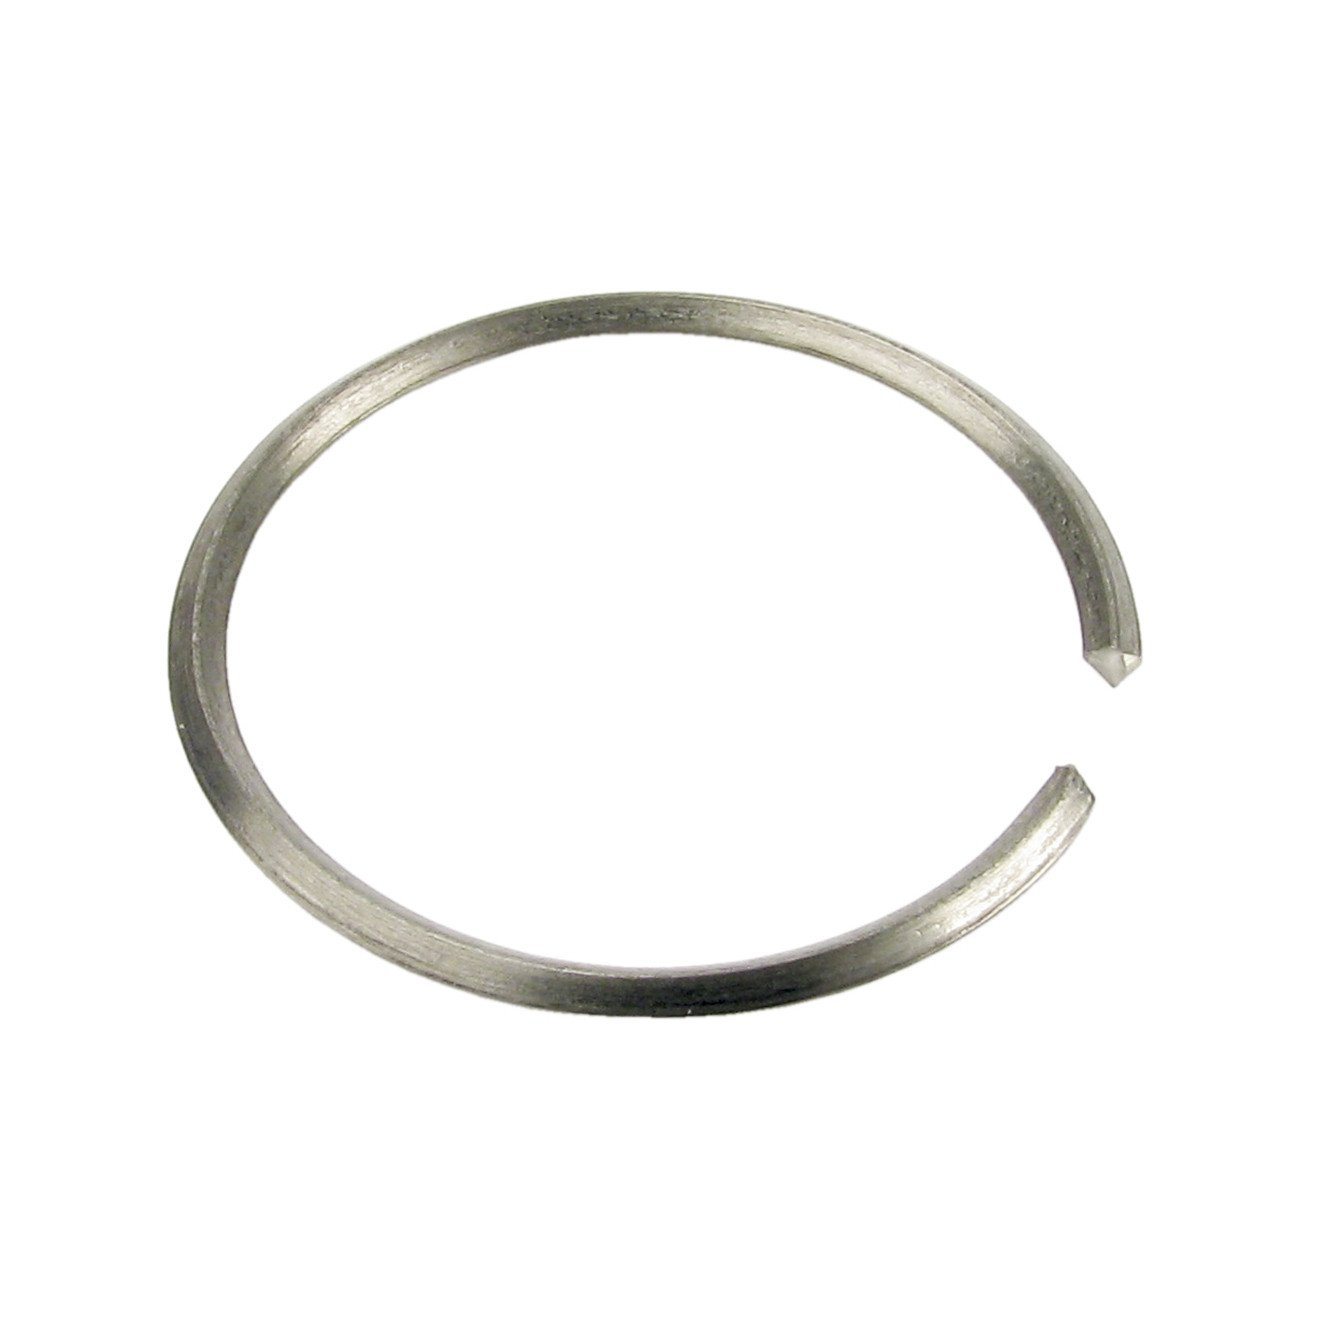 Sloan tailpiece locking ring